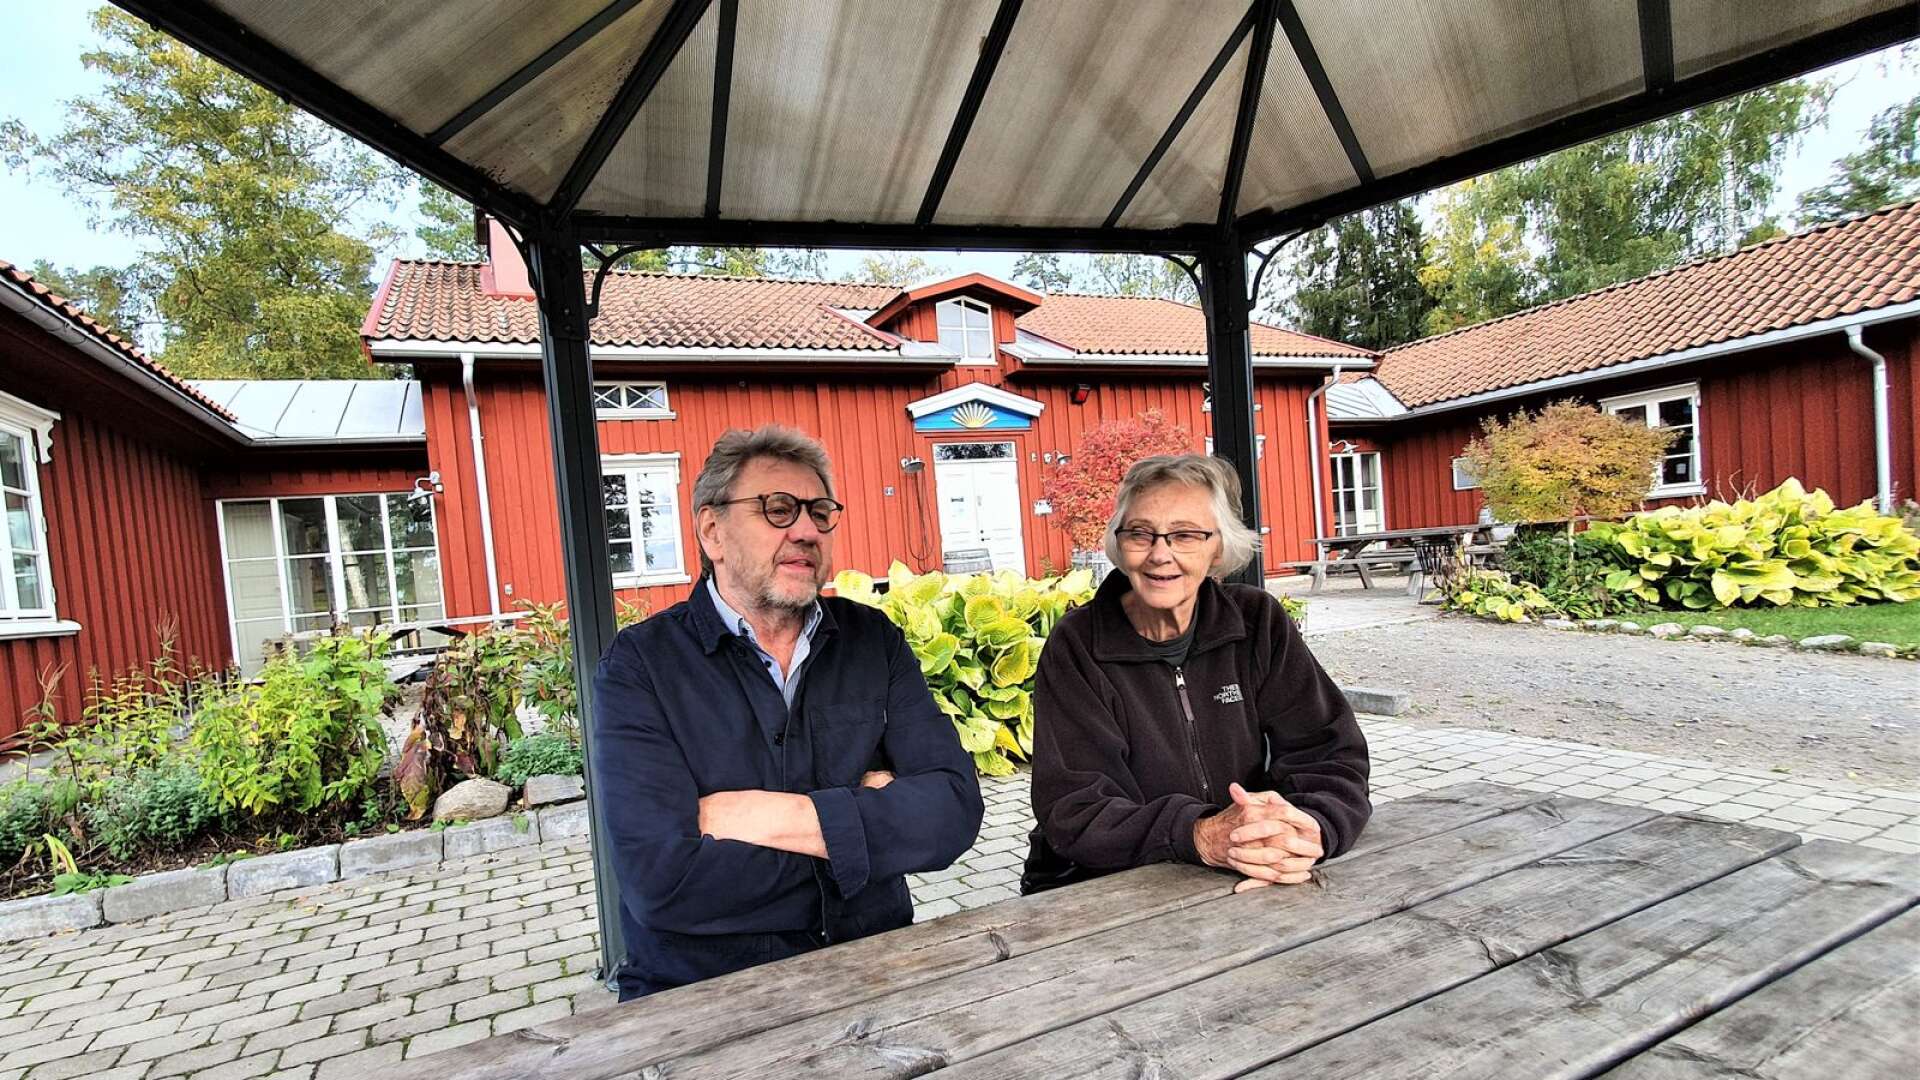 Dan Koppfeldt, ordförande i Västra Värmlands Fornminnesförening, som ansvarar för Sågudden och Kafé Nystuga, har fått ta emot kritiska synpunkter på caféverksamheten i sommar.  Här tillsammans med föreningens vice ordförande Gun Fredriksson.